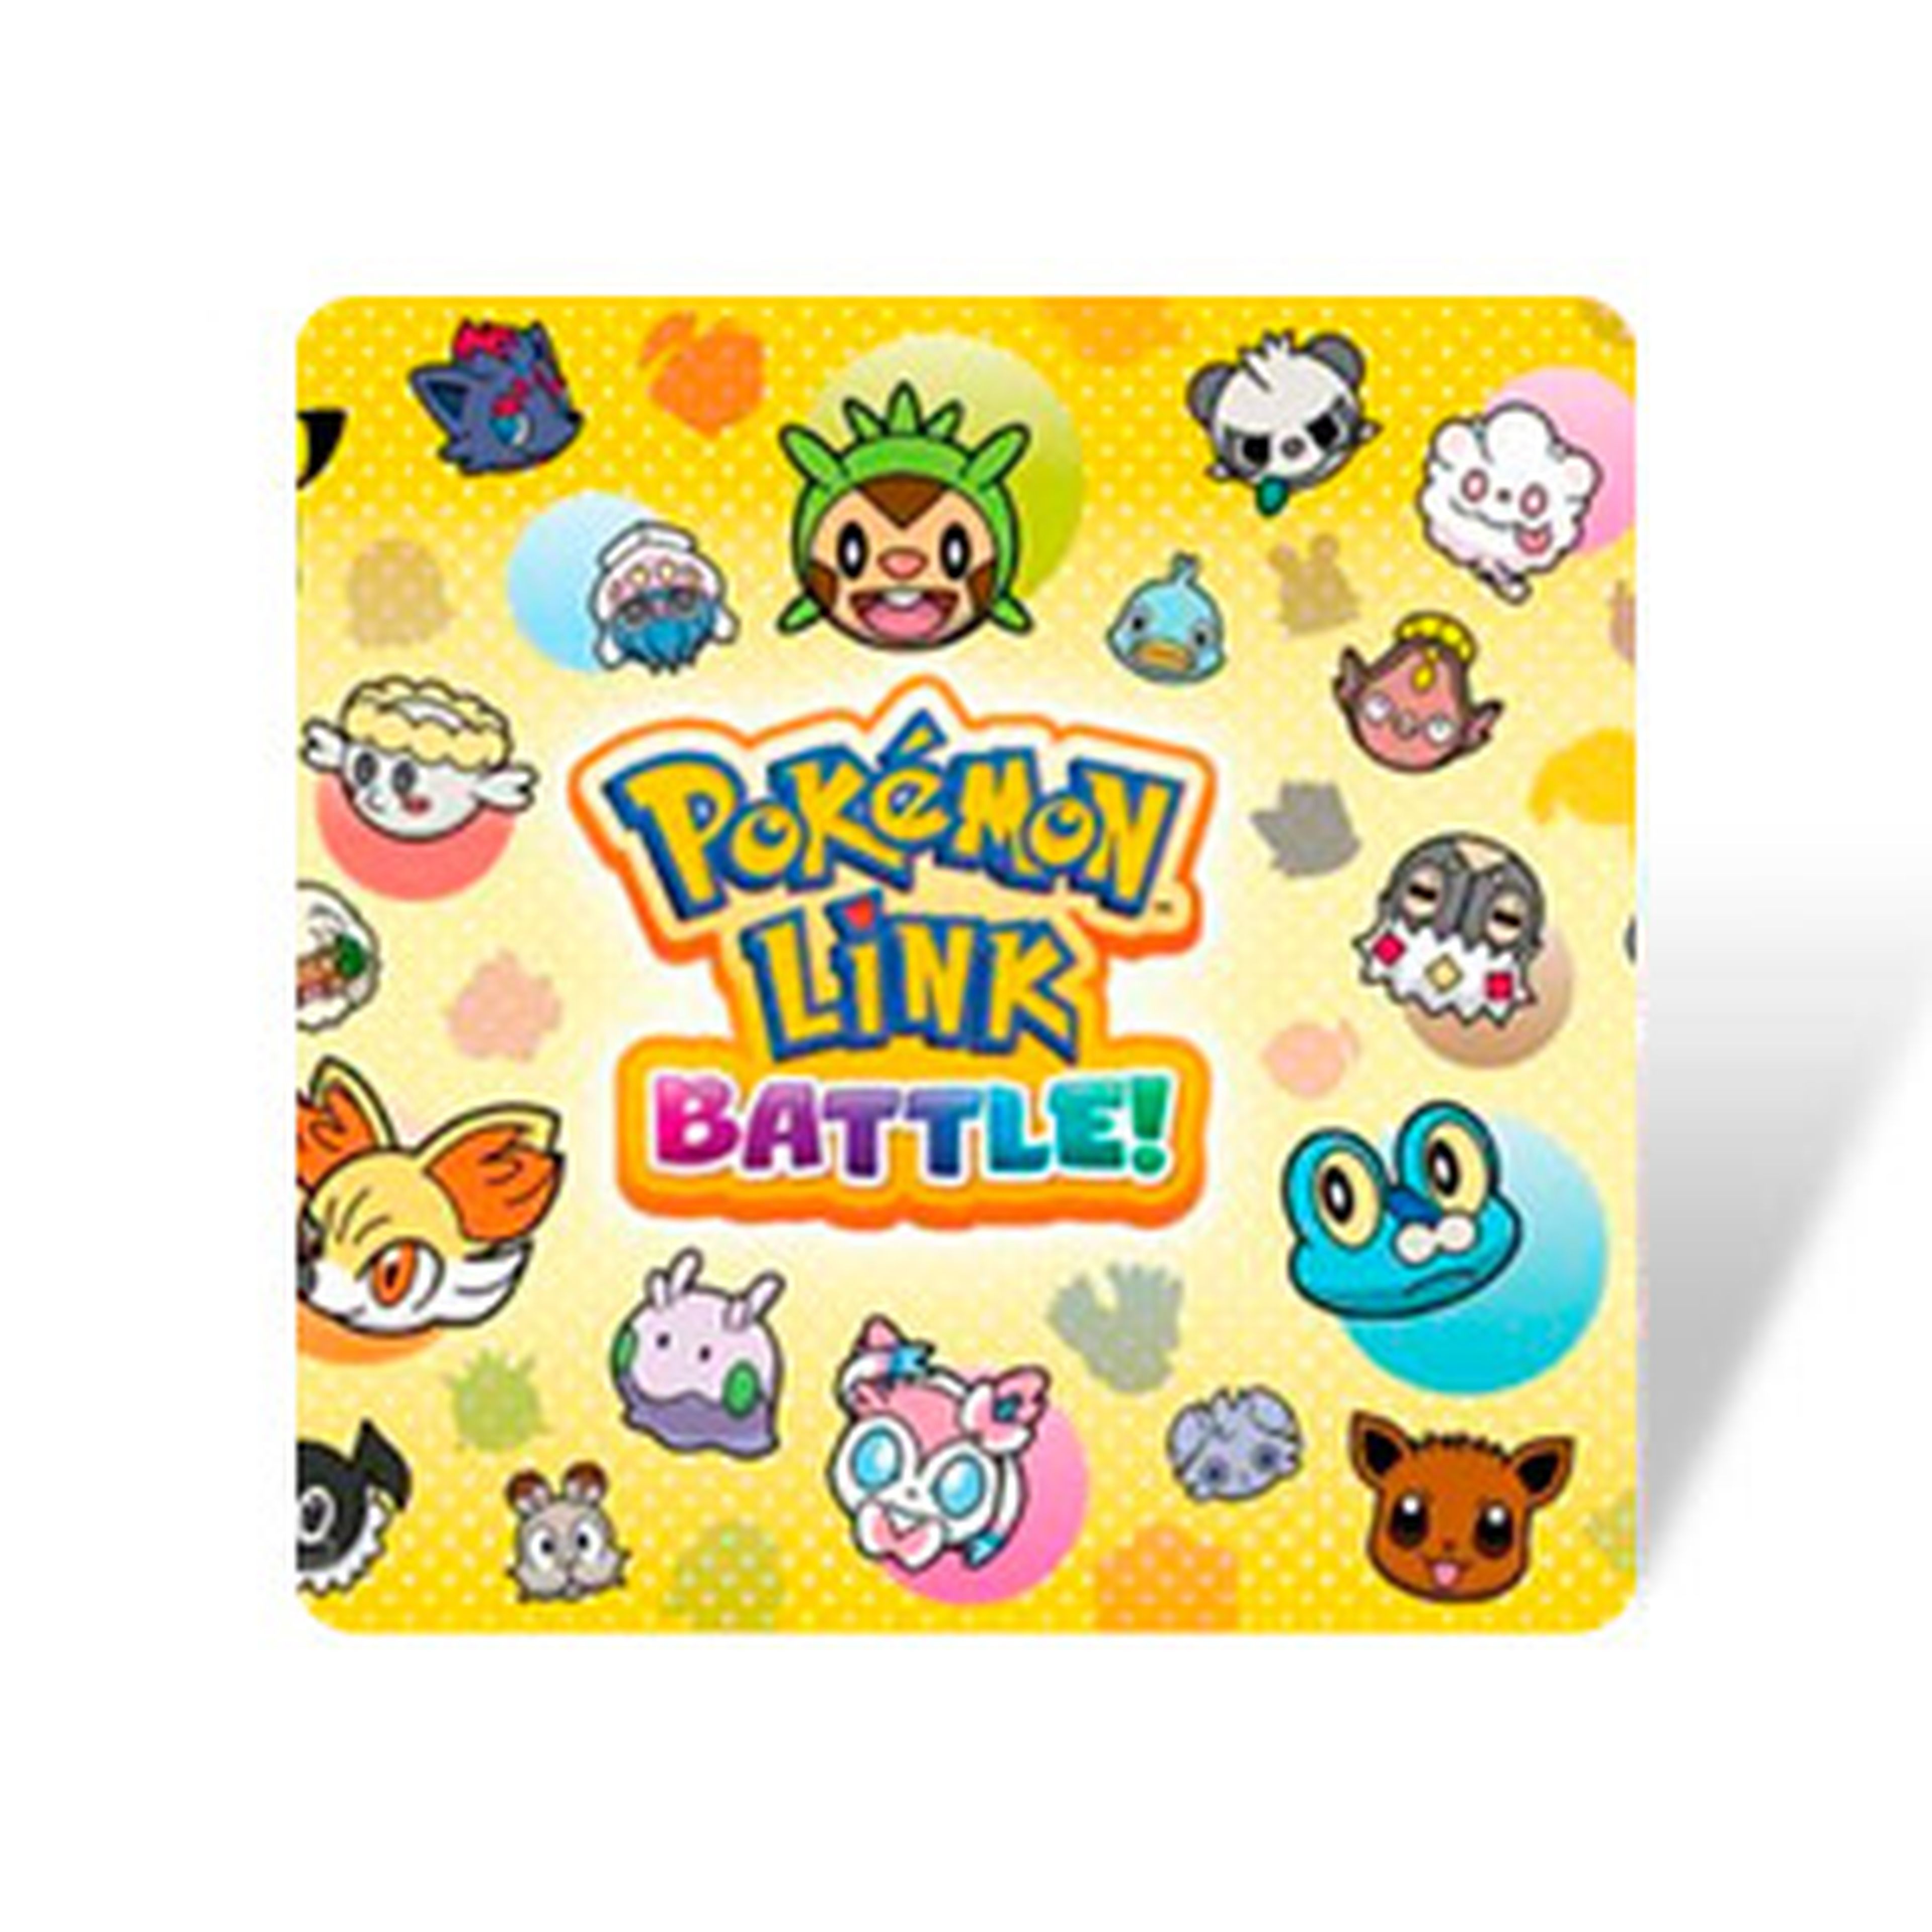 Pokémon Link Battle! para 3DS